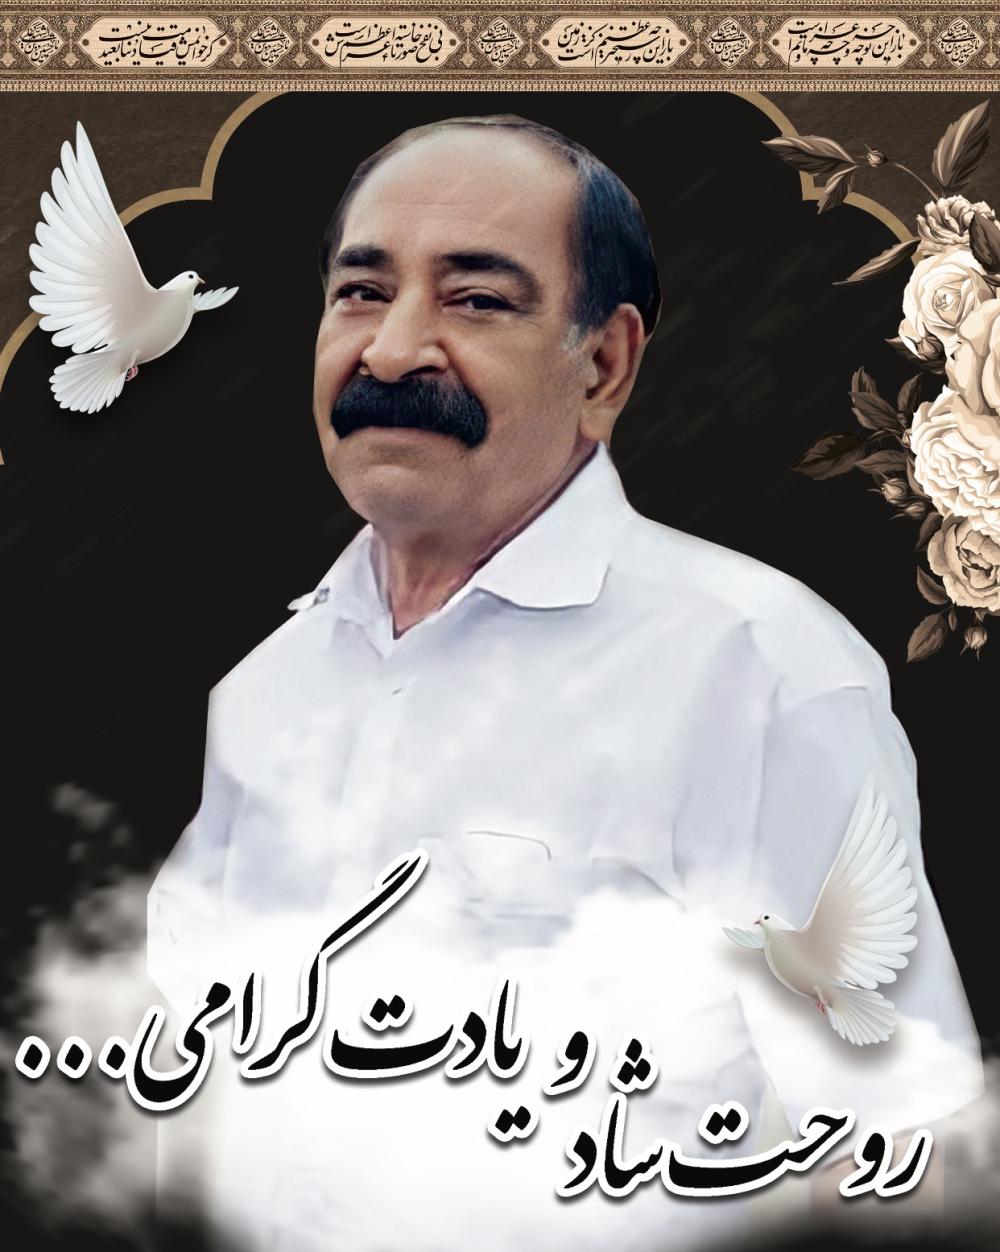 با نهايت خزان و اندوه مصيبت در گذشت پدری مهربان حسين محبوبي(ابخو)